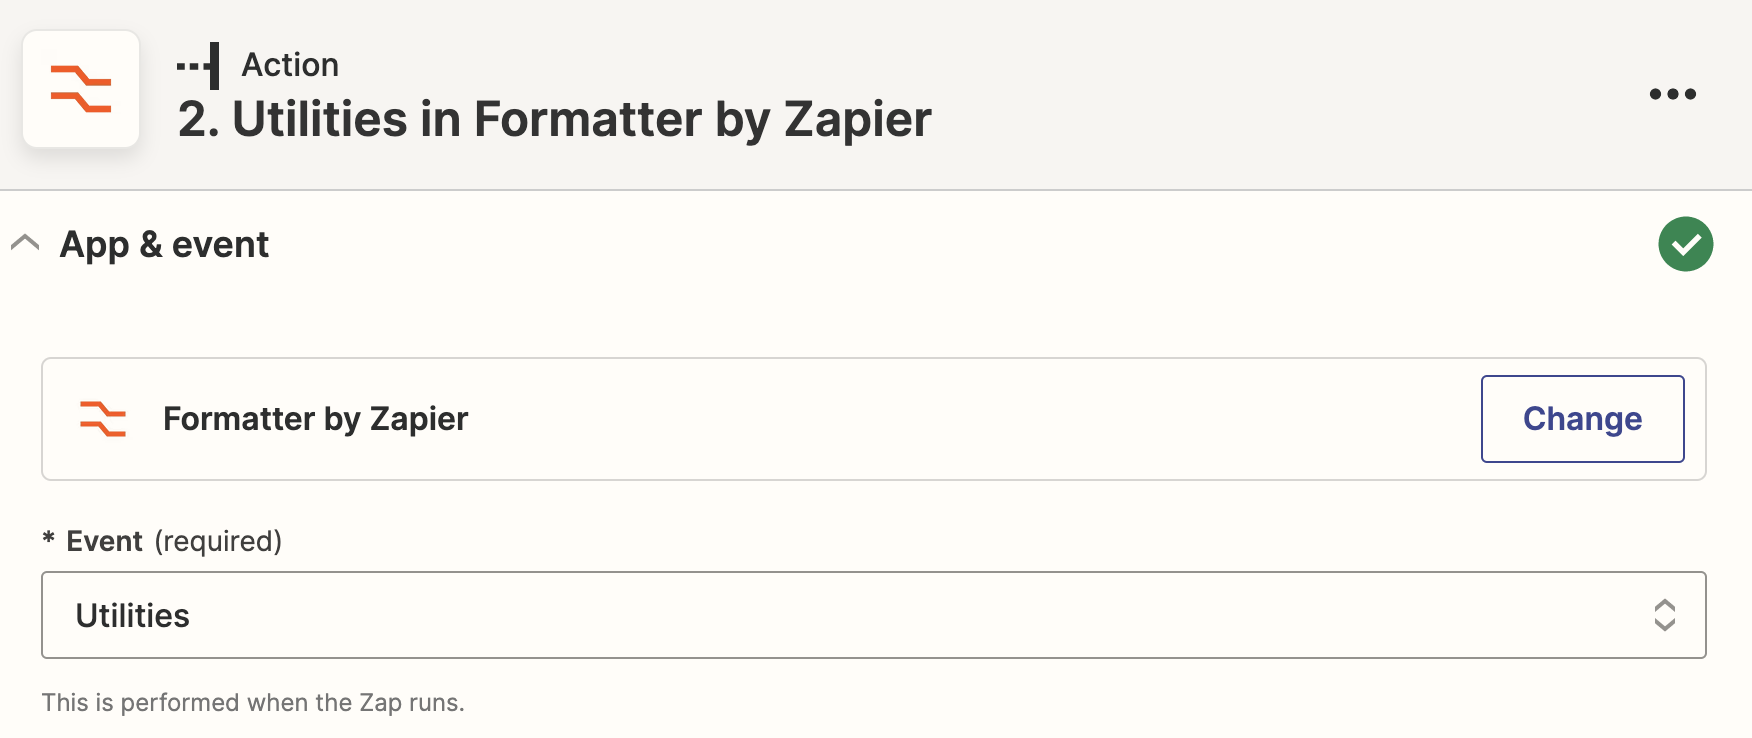 Zapier_utilitiesformatter.png